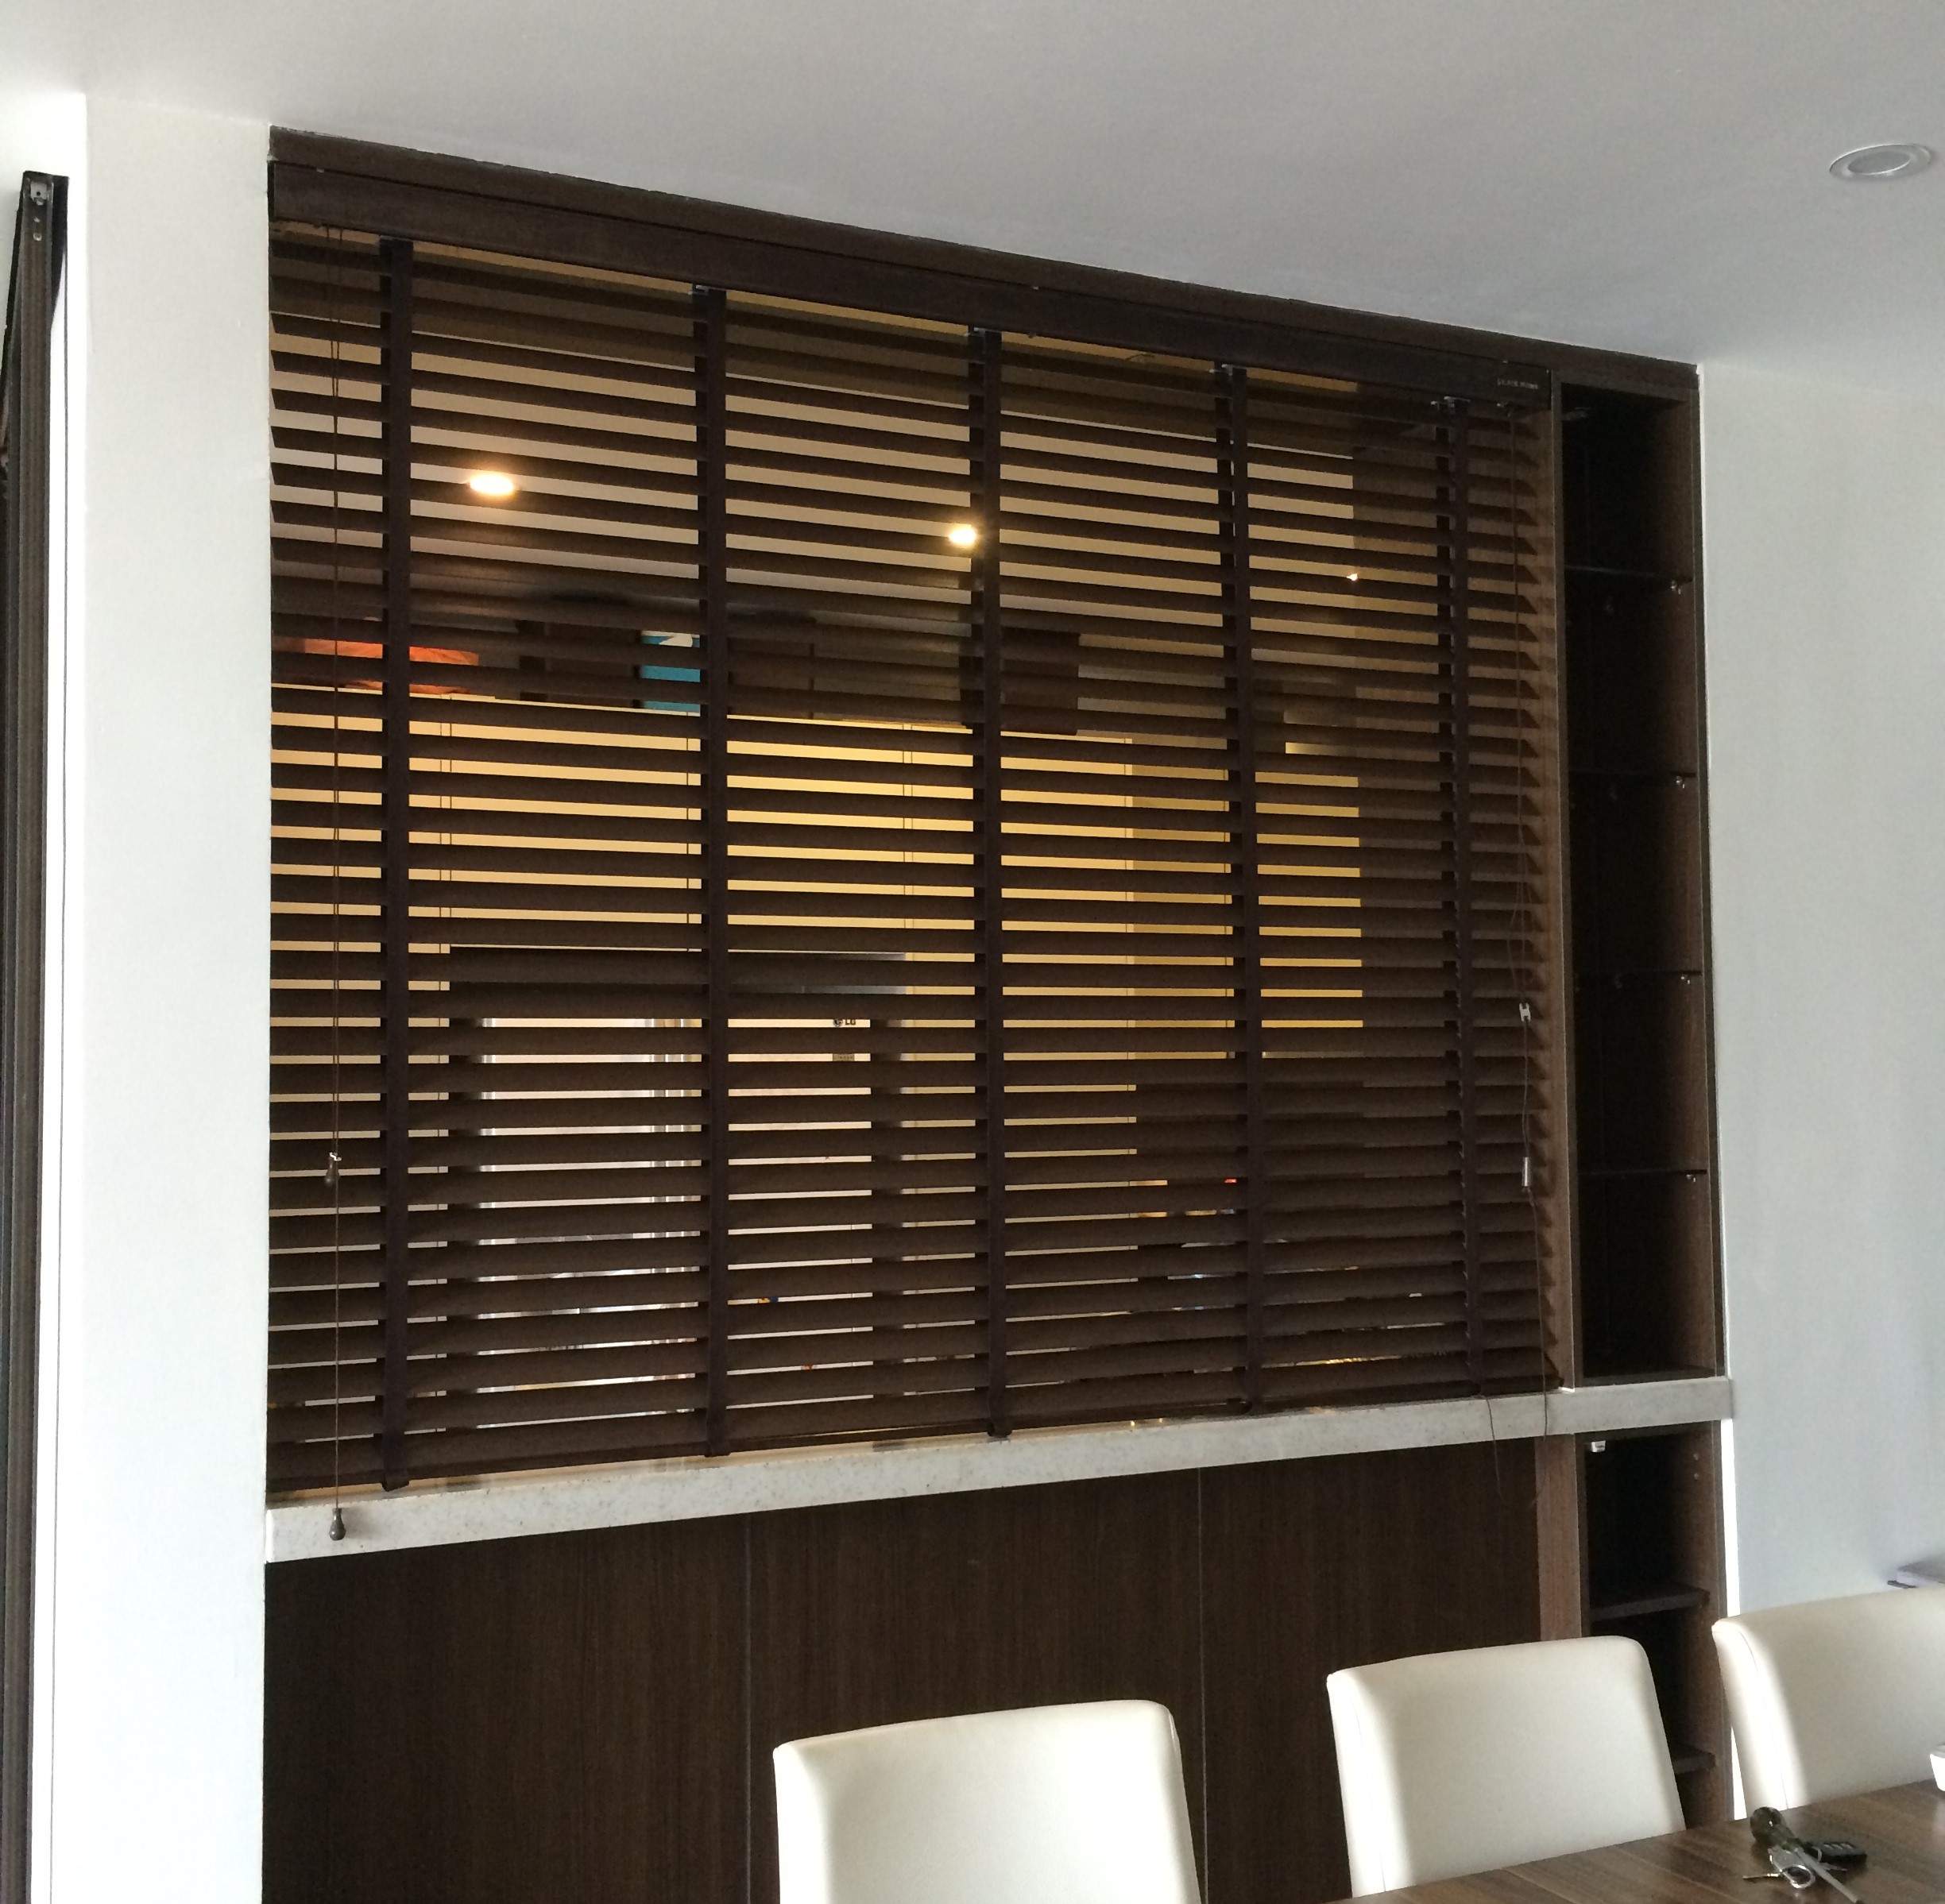 Rèm gỗ tùng tự nhiên được lắp đặt trong không gian phòng bếp 